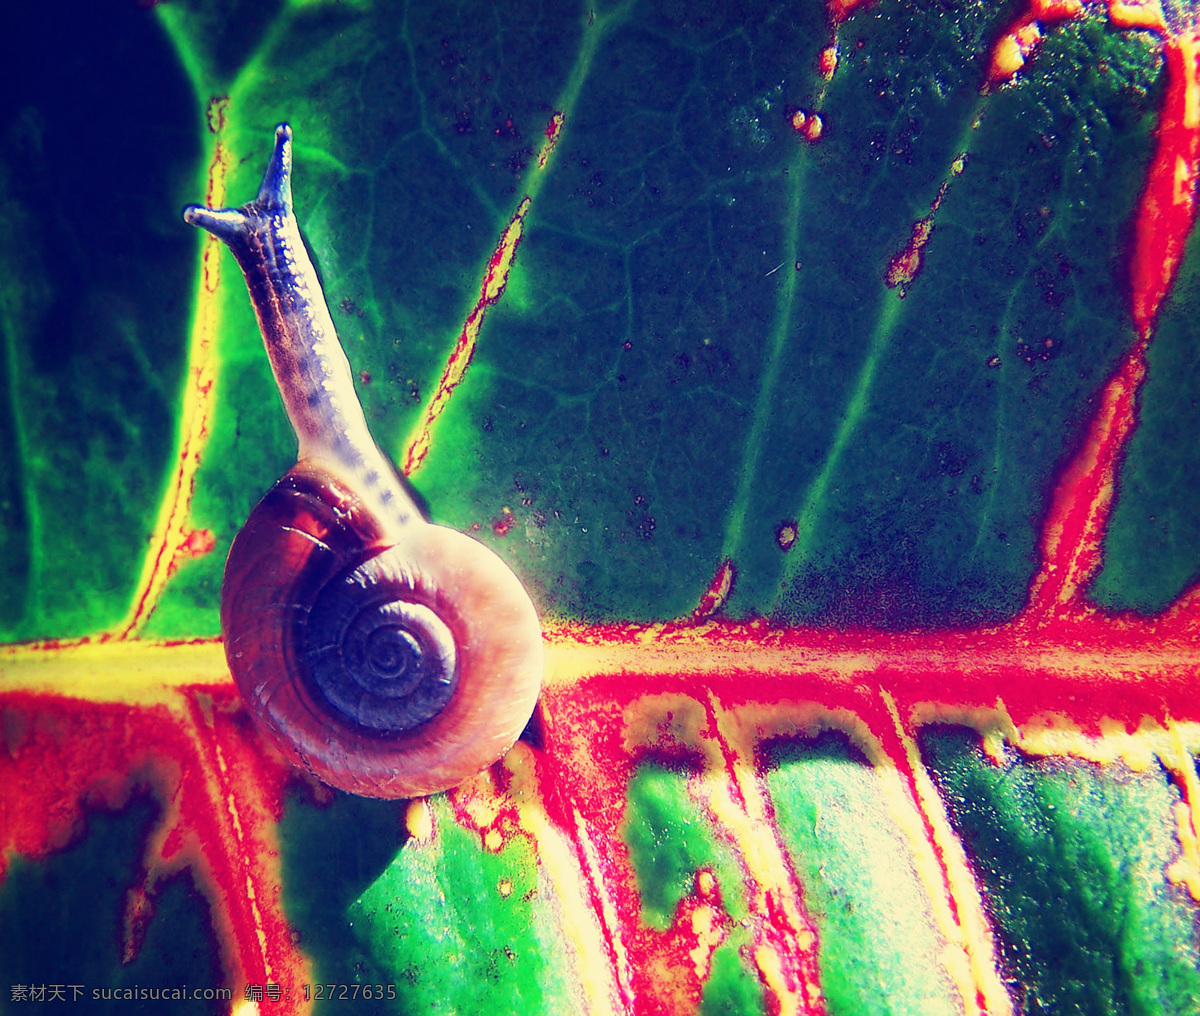 显微镜 下 树叶 上 蜗牛 动物 其他类别 生活百科